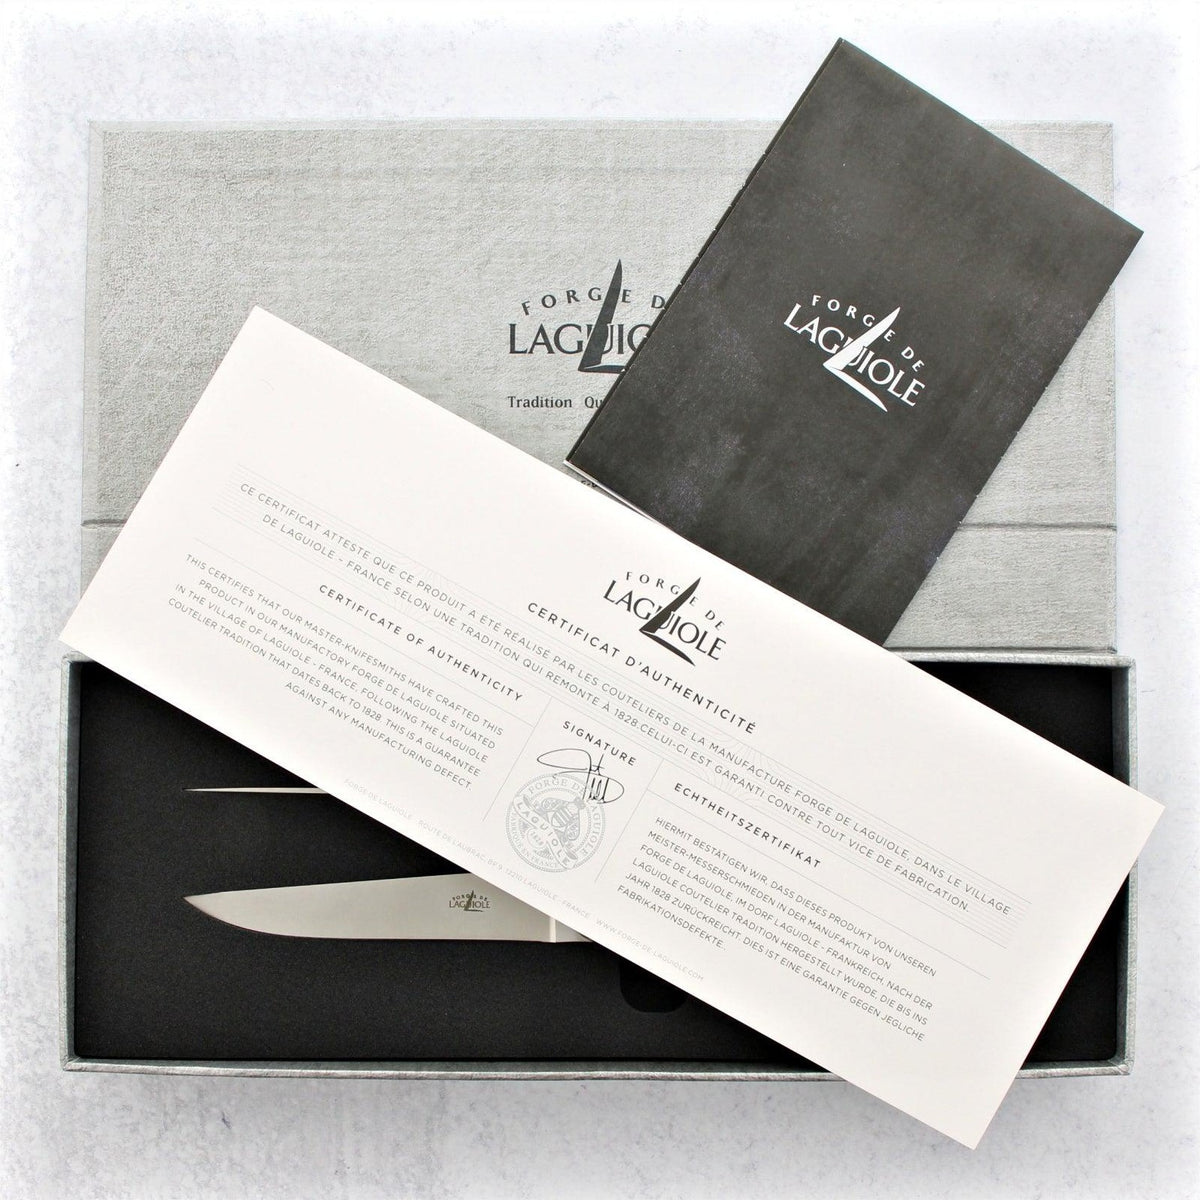 Forge de Laguiole Olive Wood Steak Knives - Shiny